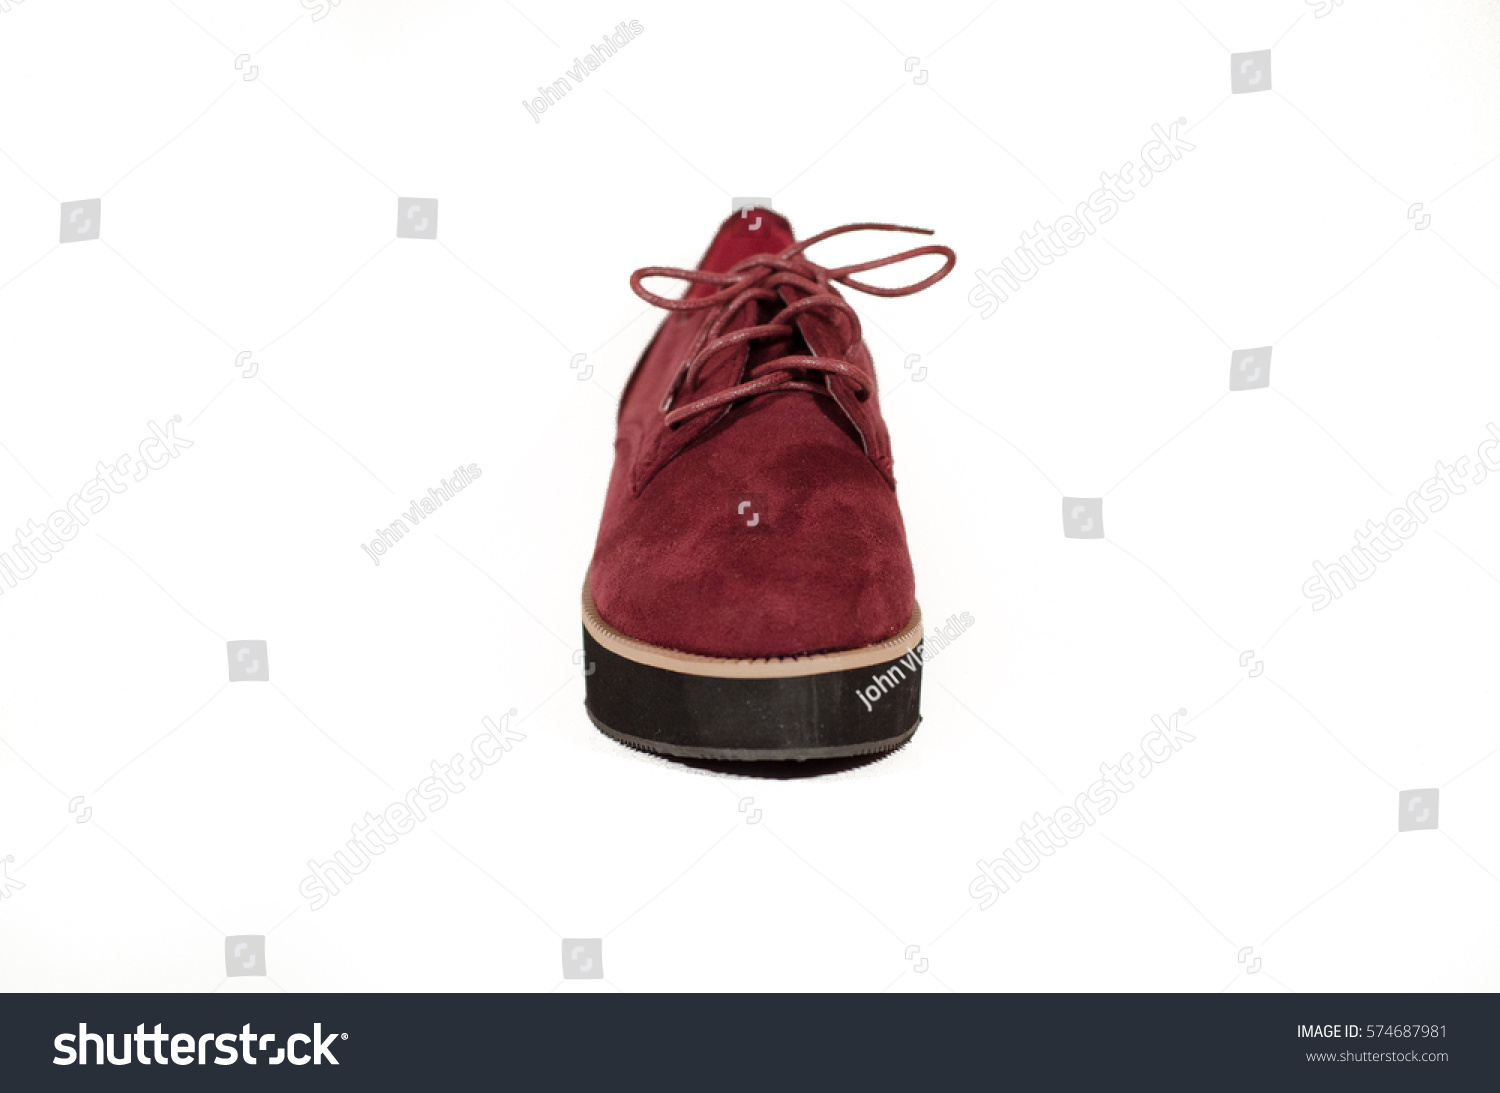 burgundy color women's dress shoes